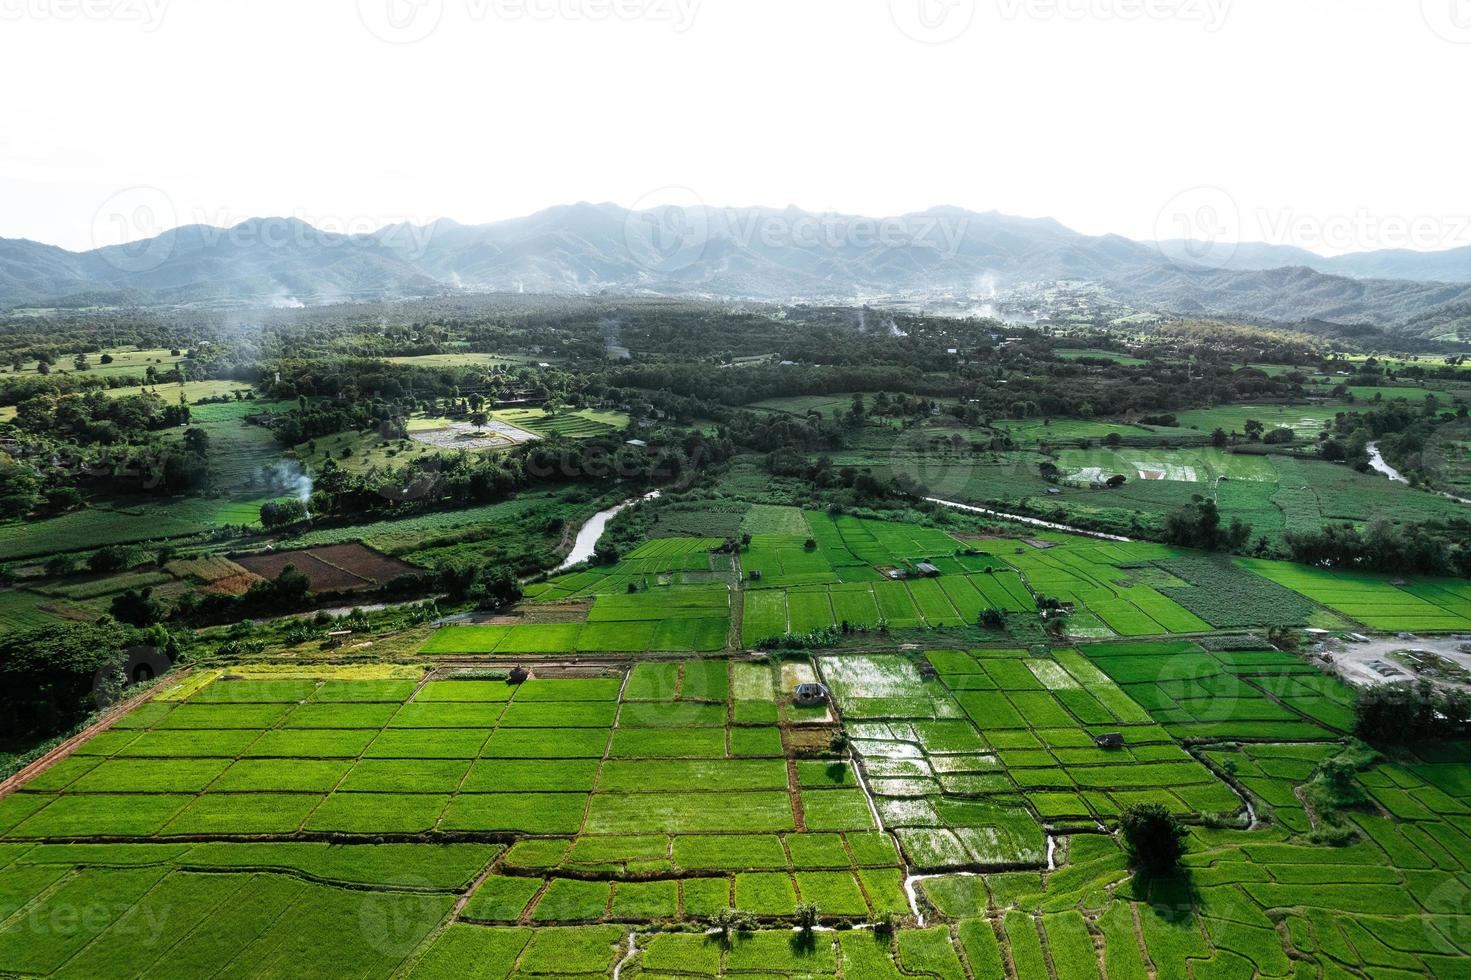 paesaggio risaia in asia, vista aerea delle risaie foto